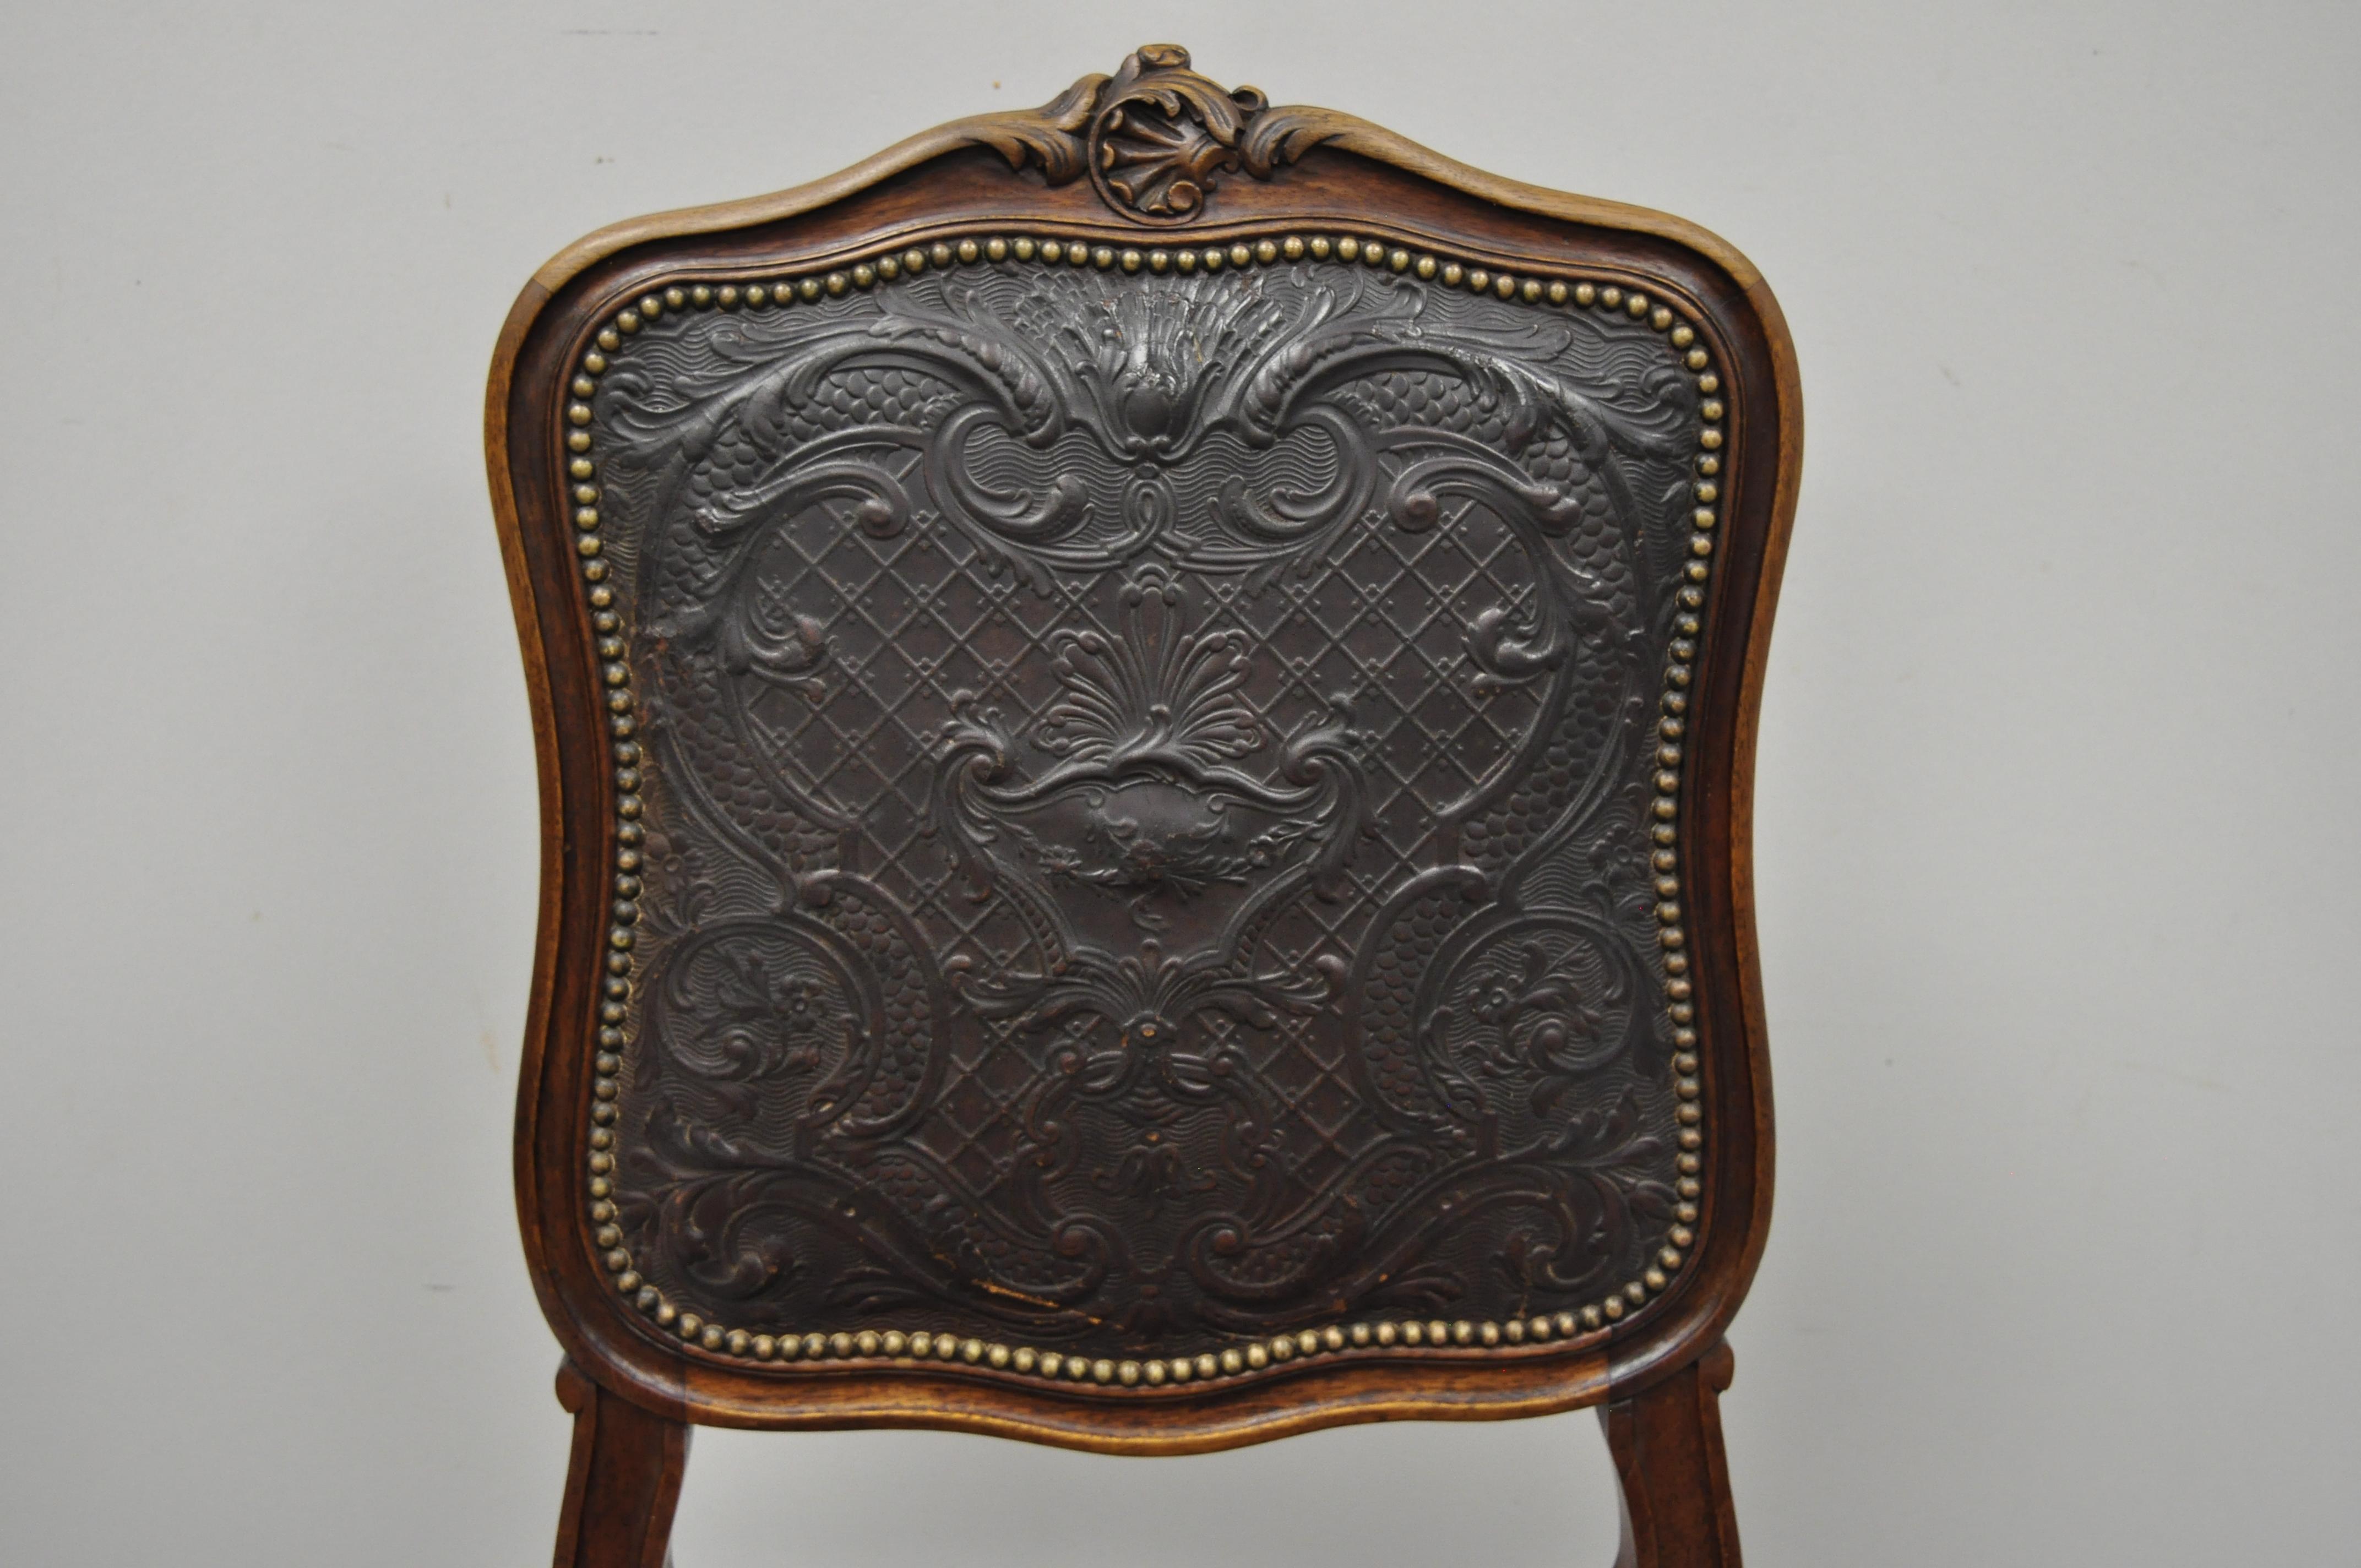 Chaise d'appoint ancienne Louis XV en noyer, cuir gaufré marron (A). Cet article présente un dossier et une assise en cuir gaufré marron, une garniture en tête de clou, un cadre en bois massif, des détails finement sculptés, des pieds en cabriole,